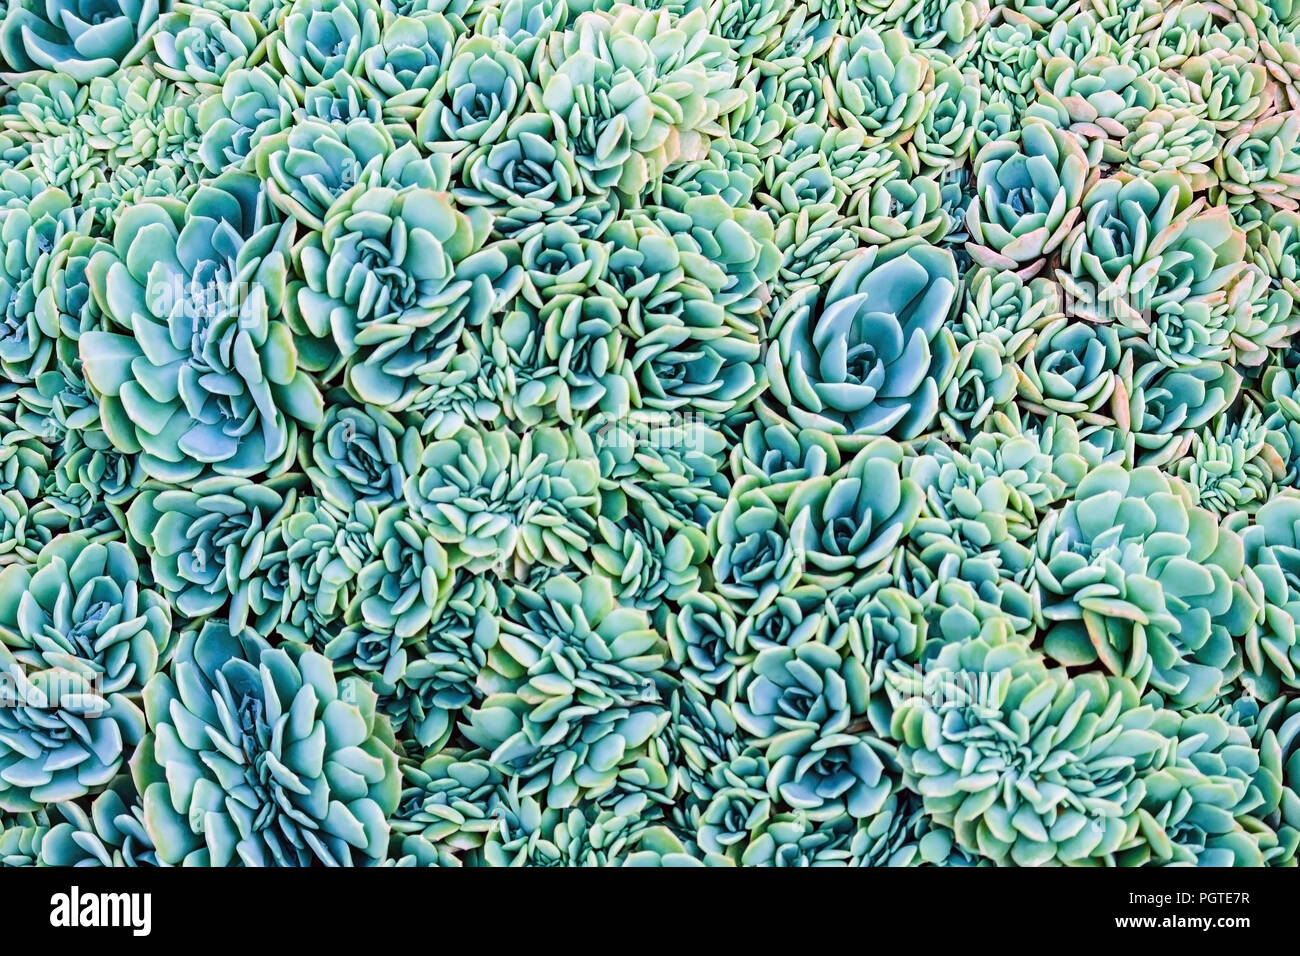 Un montón de pequeñas plantas suculentas Graptopetalum regordeta con pétalos son de color azul, verde y naranja Foto de stock